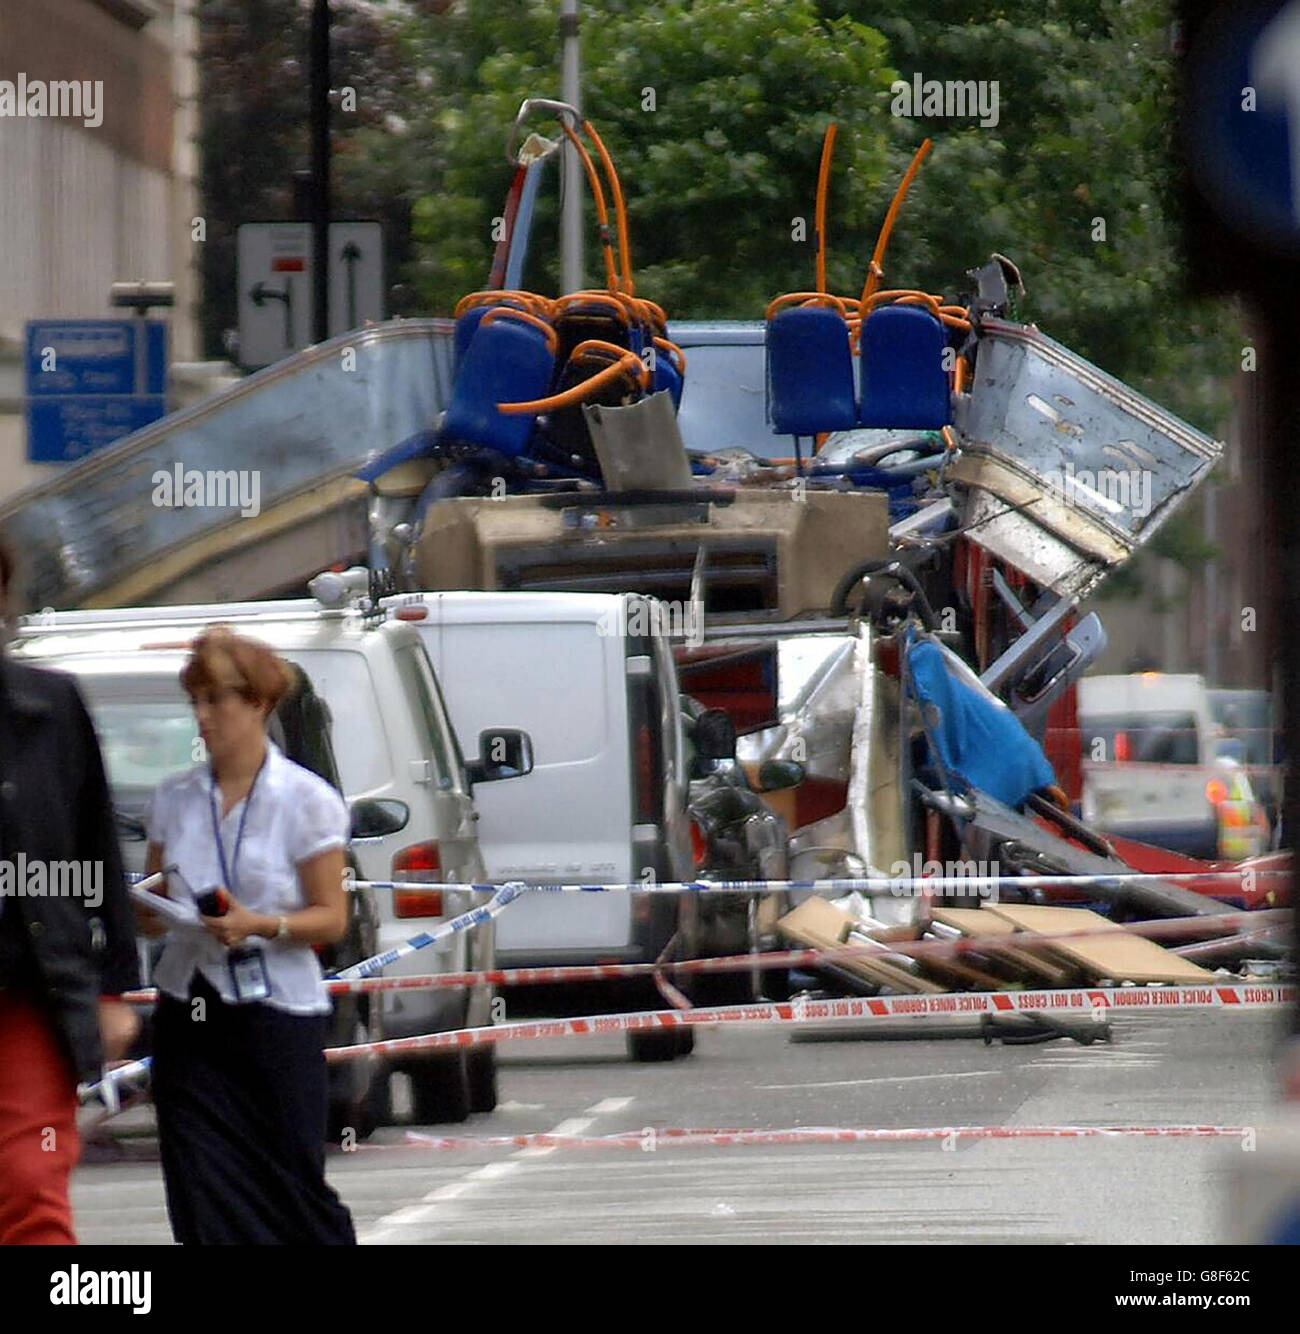 London Terrorist Attacks Stock Photo